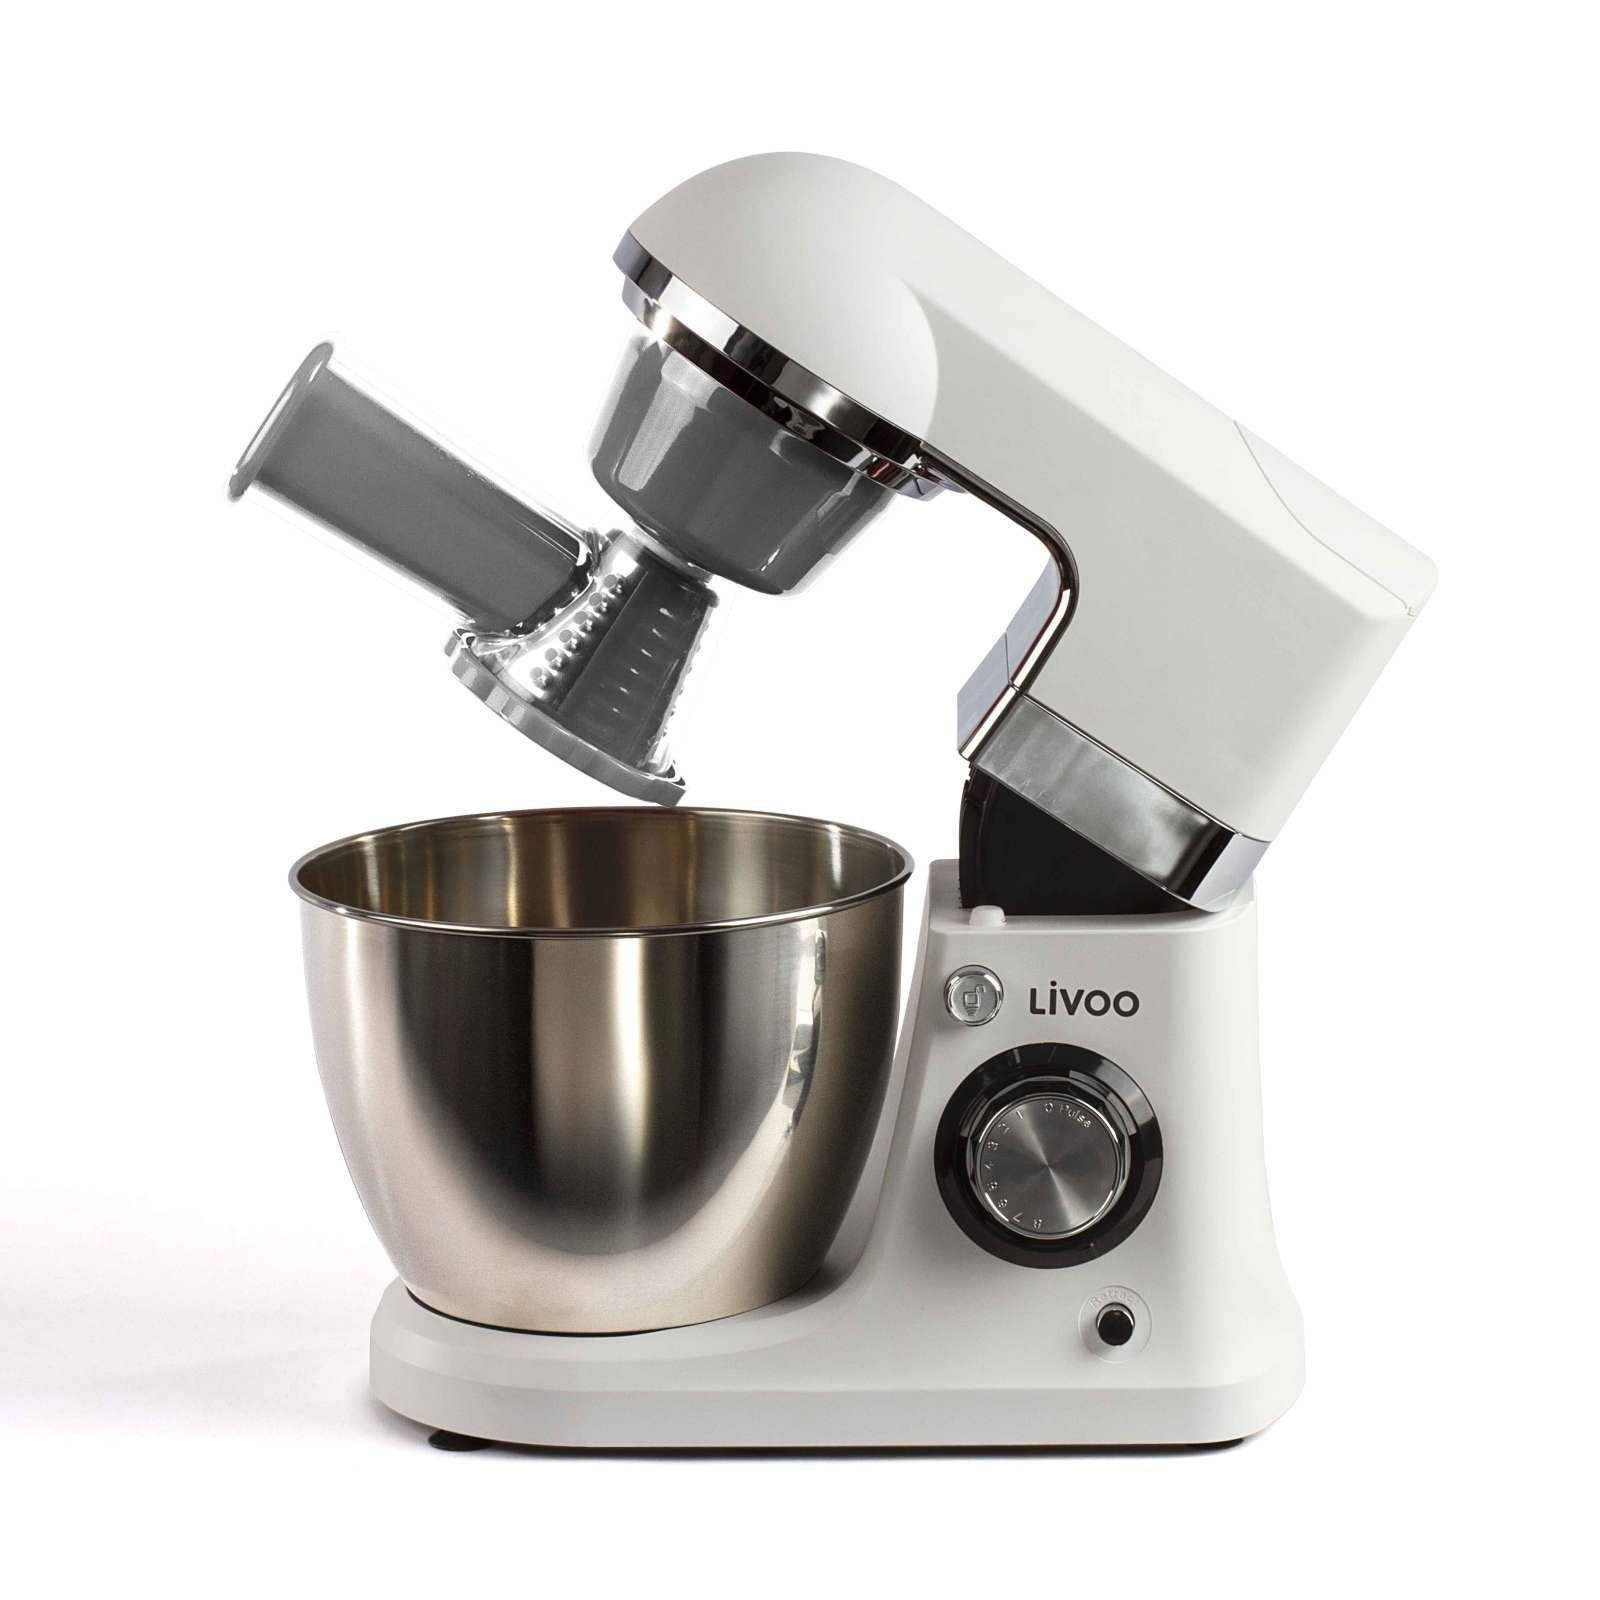 LIVOO Küchenmaschine LIVOO Küchenmaschine All in One Standmixer 700 Watt  DOP194, 700 W online kaufen | OTTO